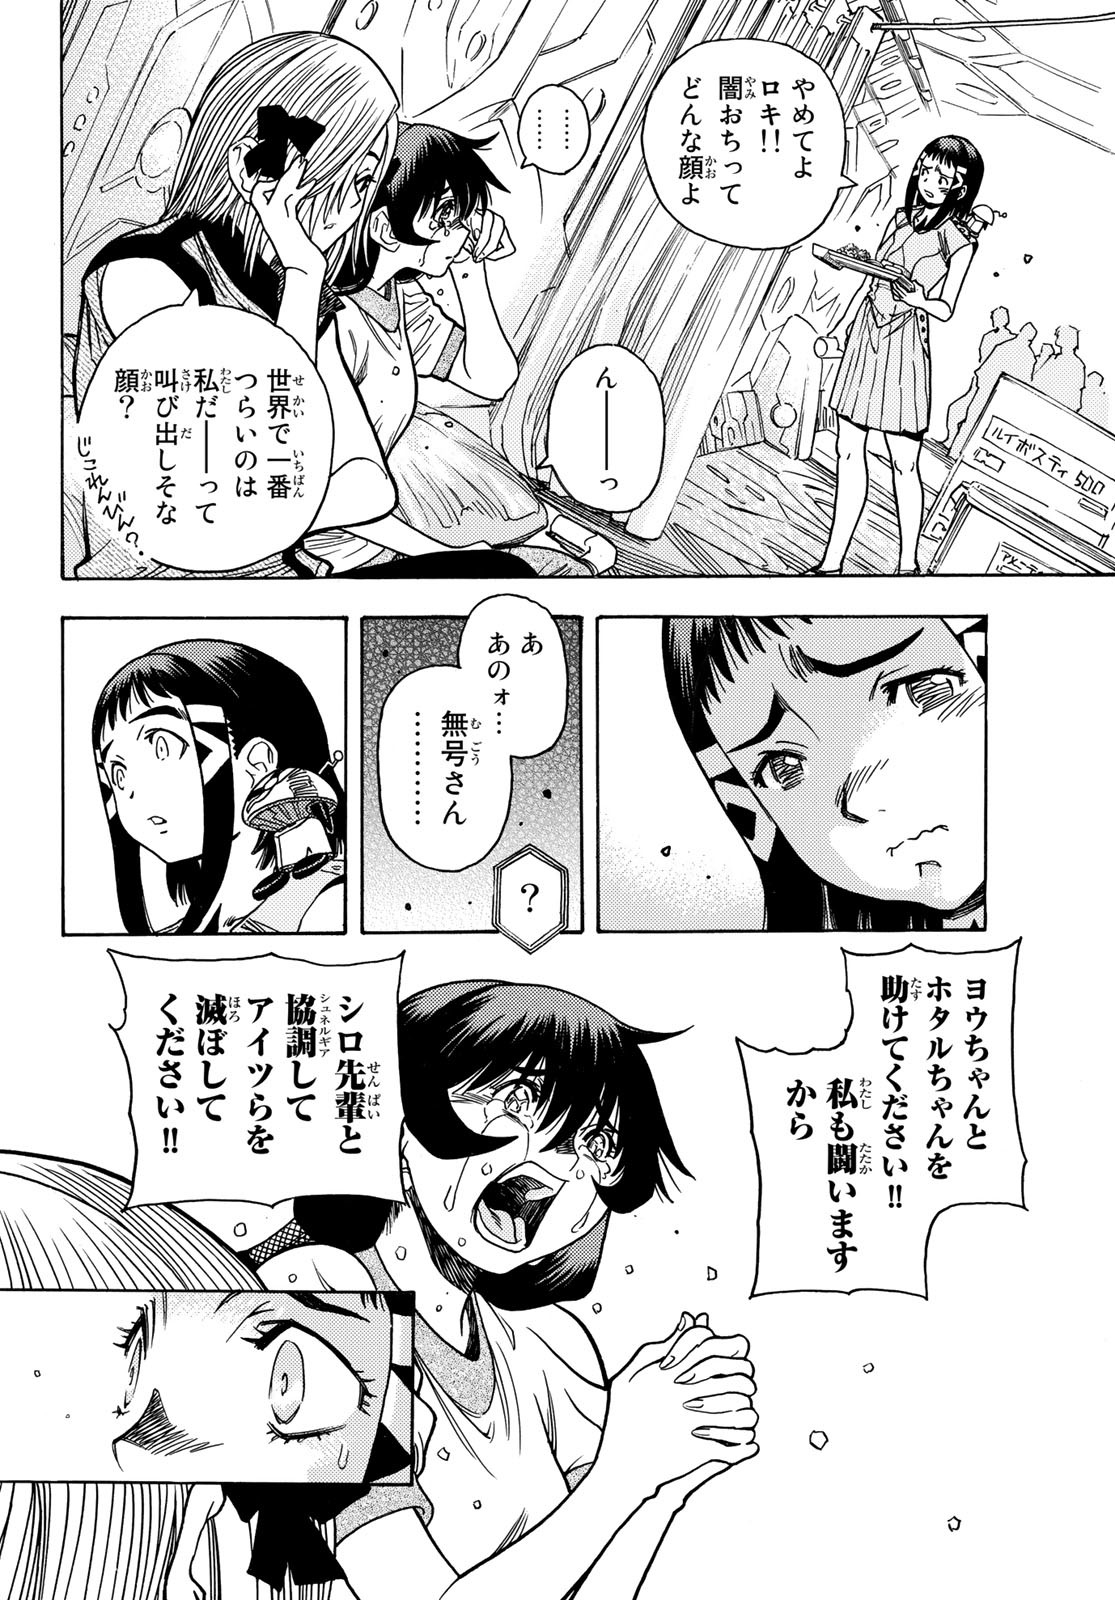 Mugou no Schnell Gear: Chikyuugai Kisouka AI - Chapter 44 - Page 2